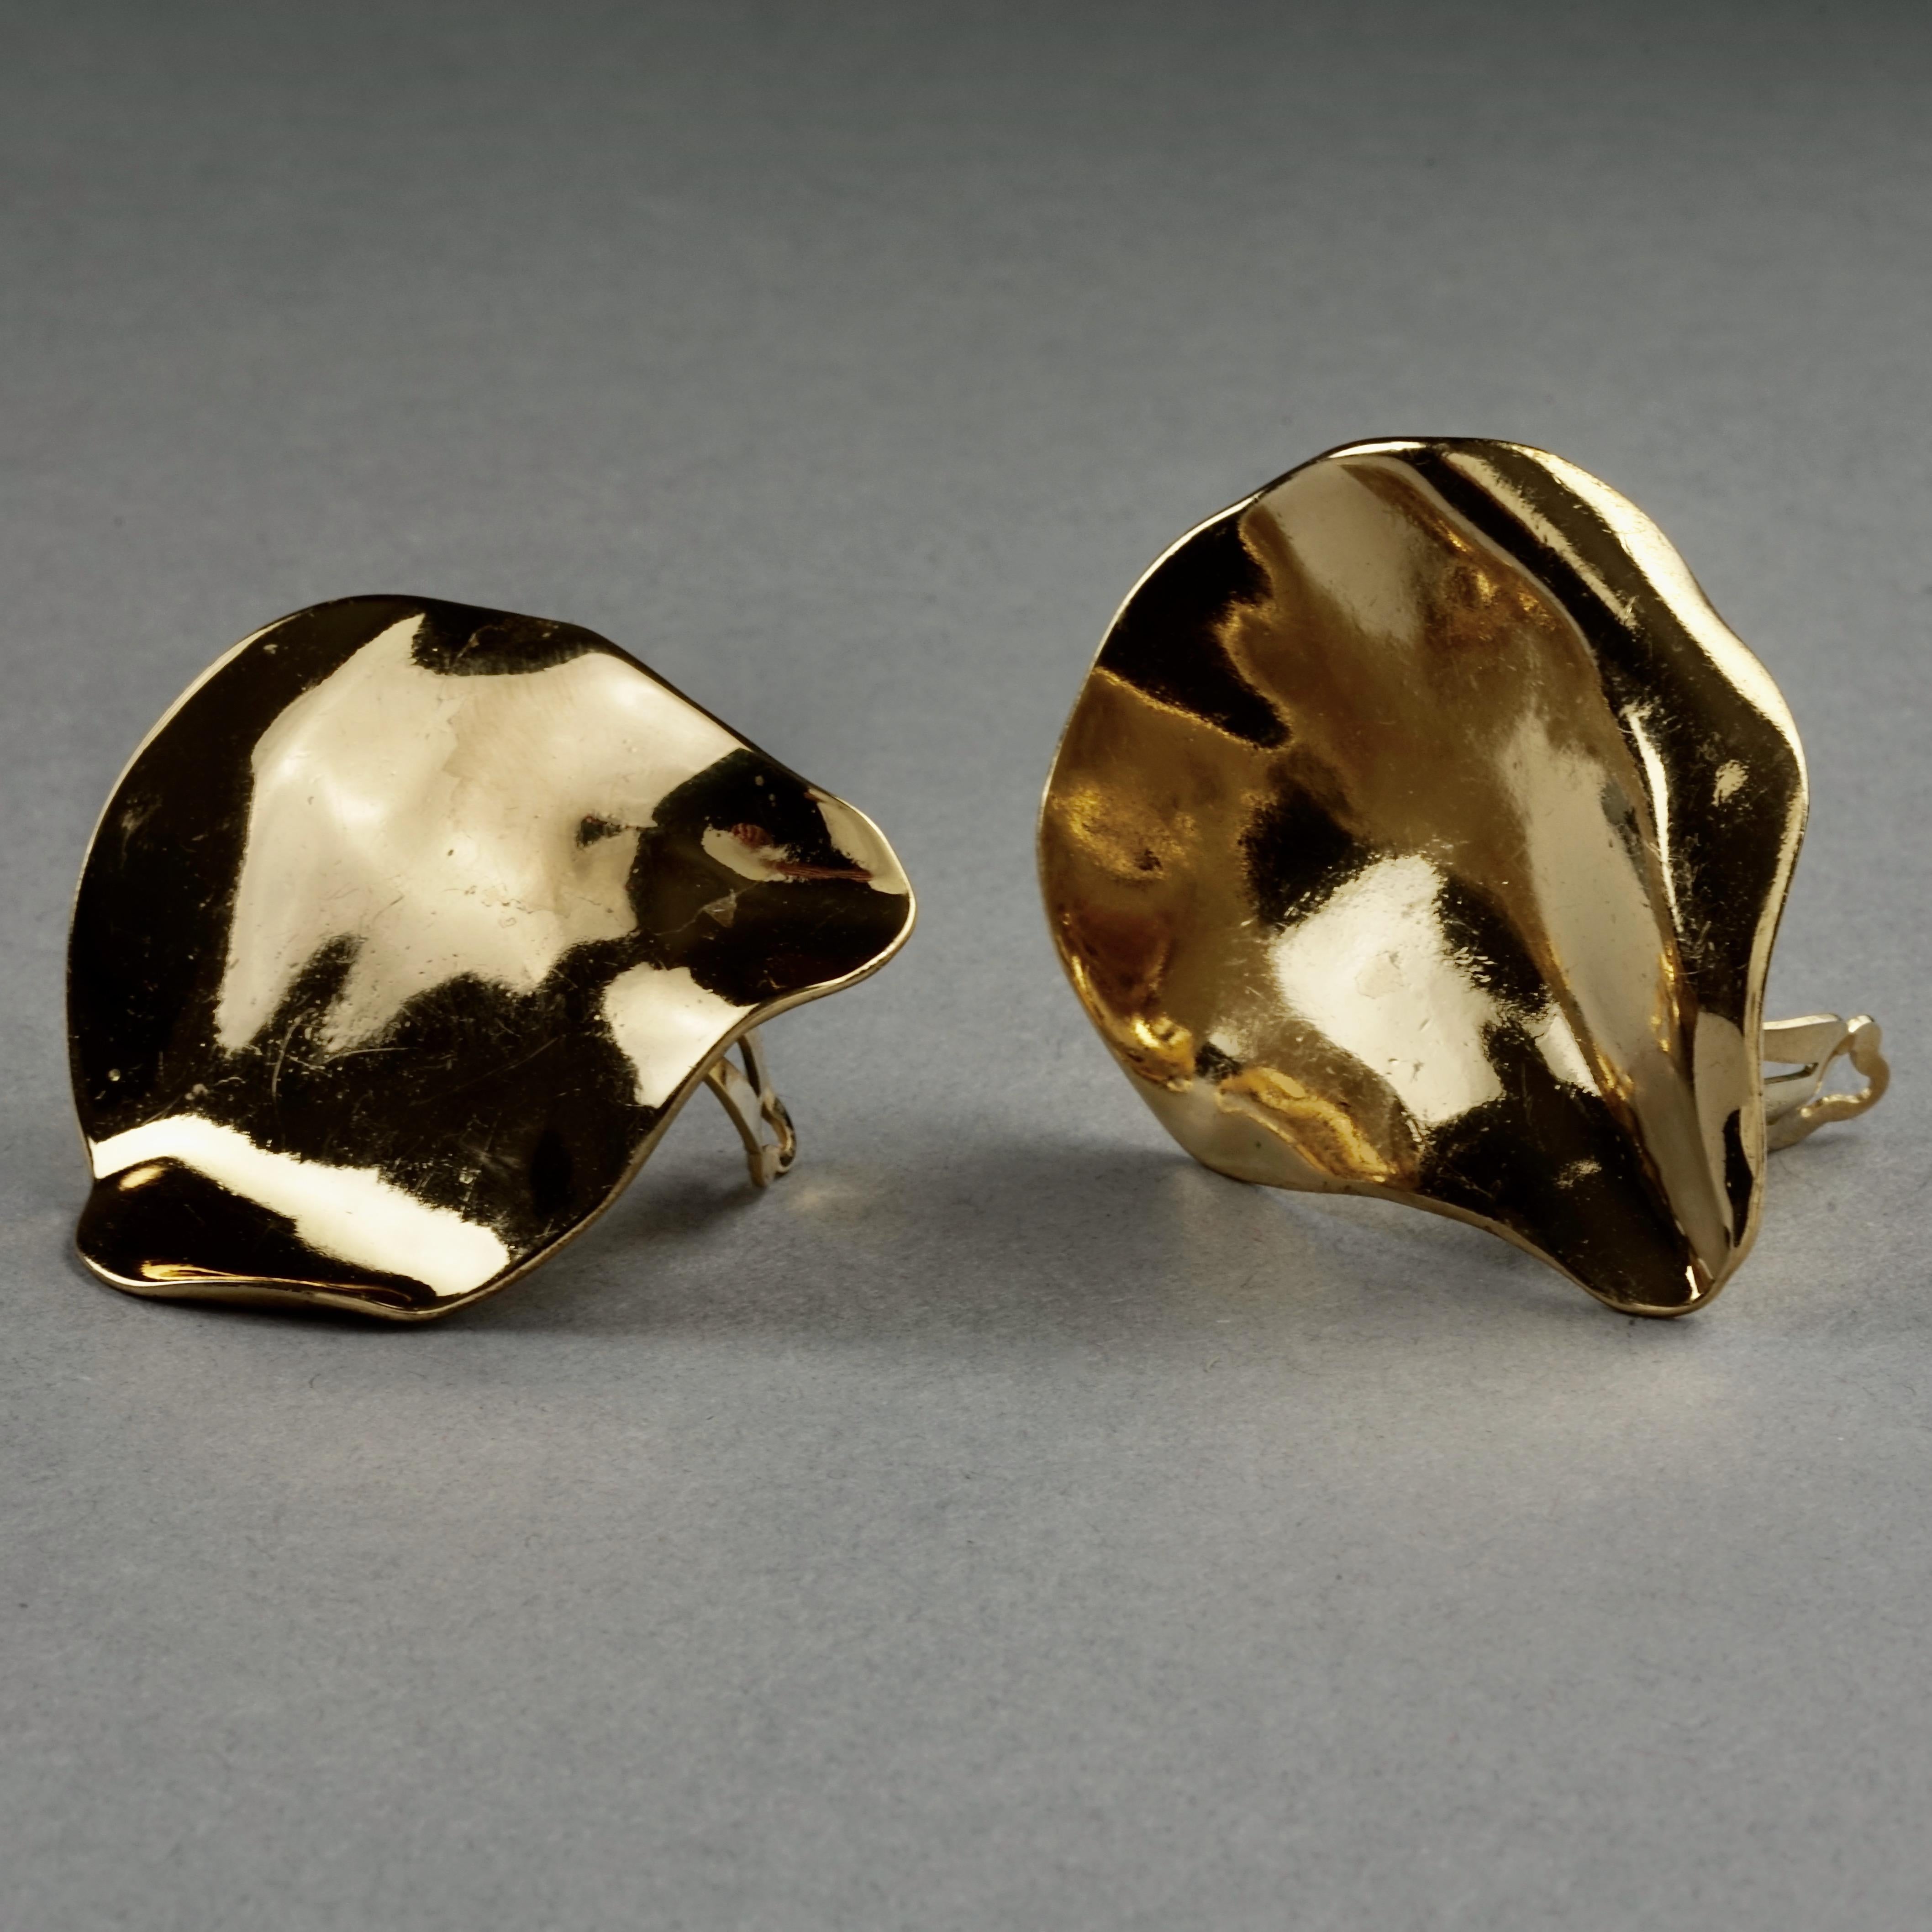 asymmetric saint laurent earrings in metal